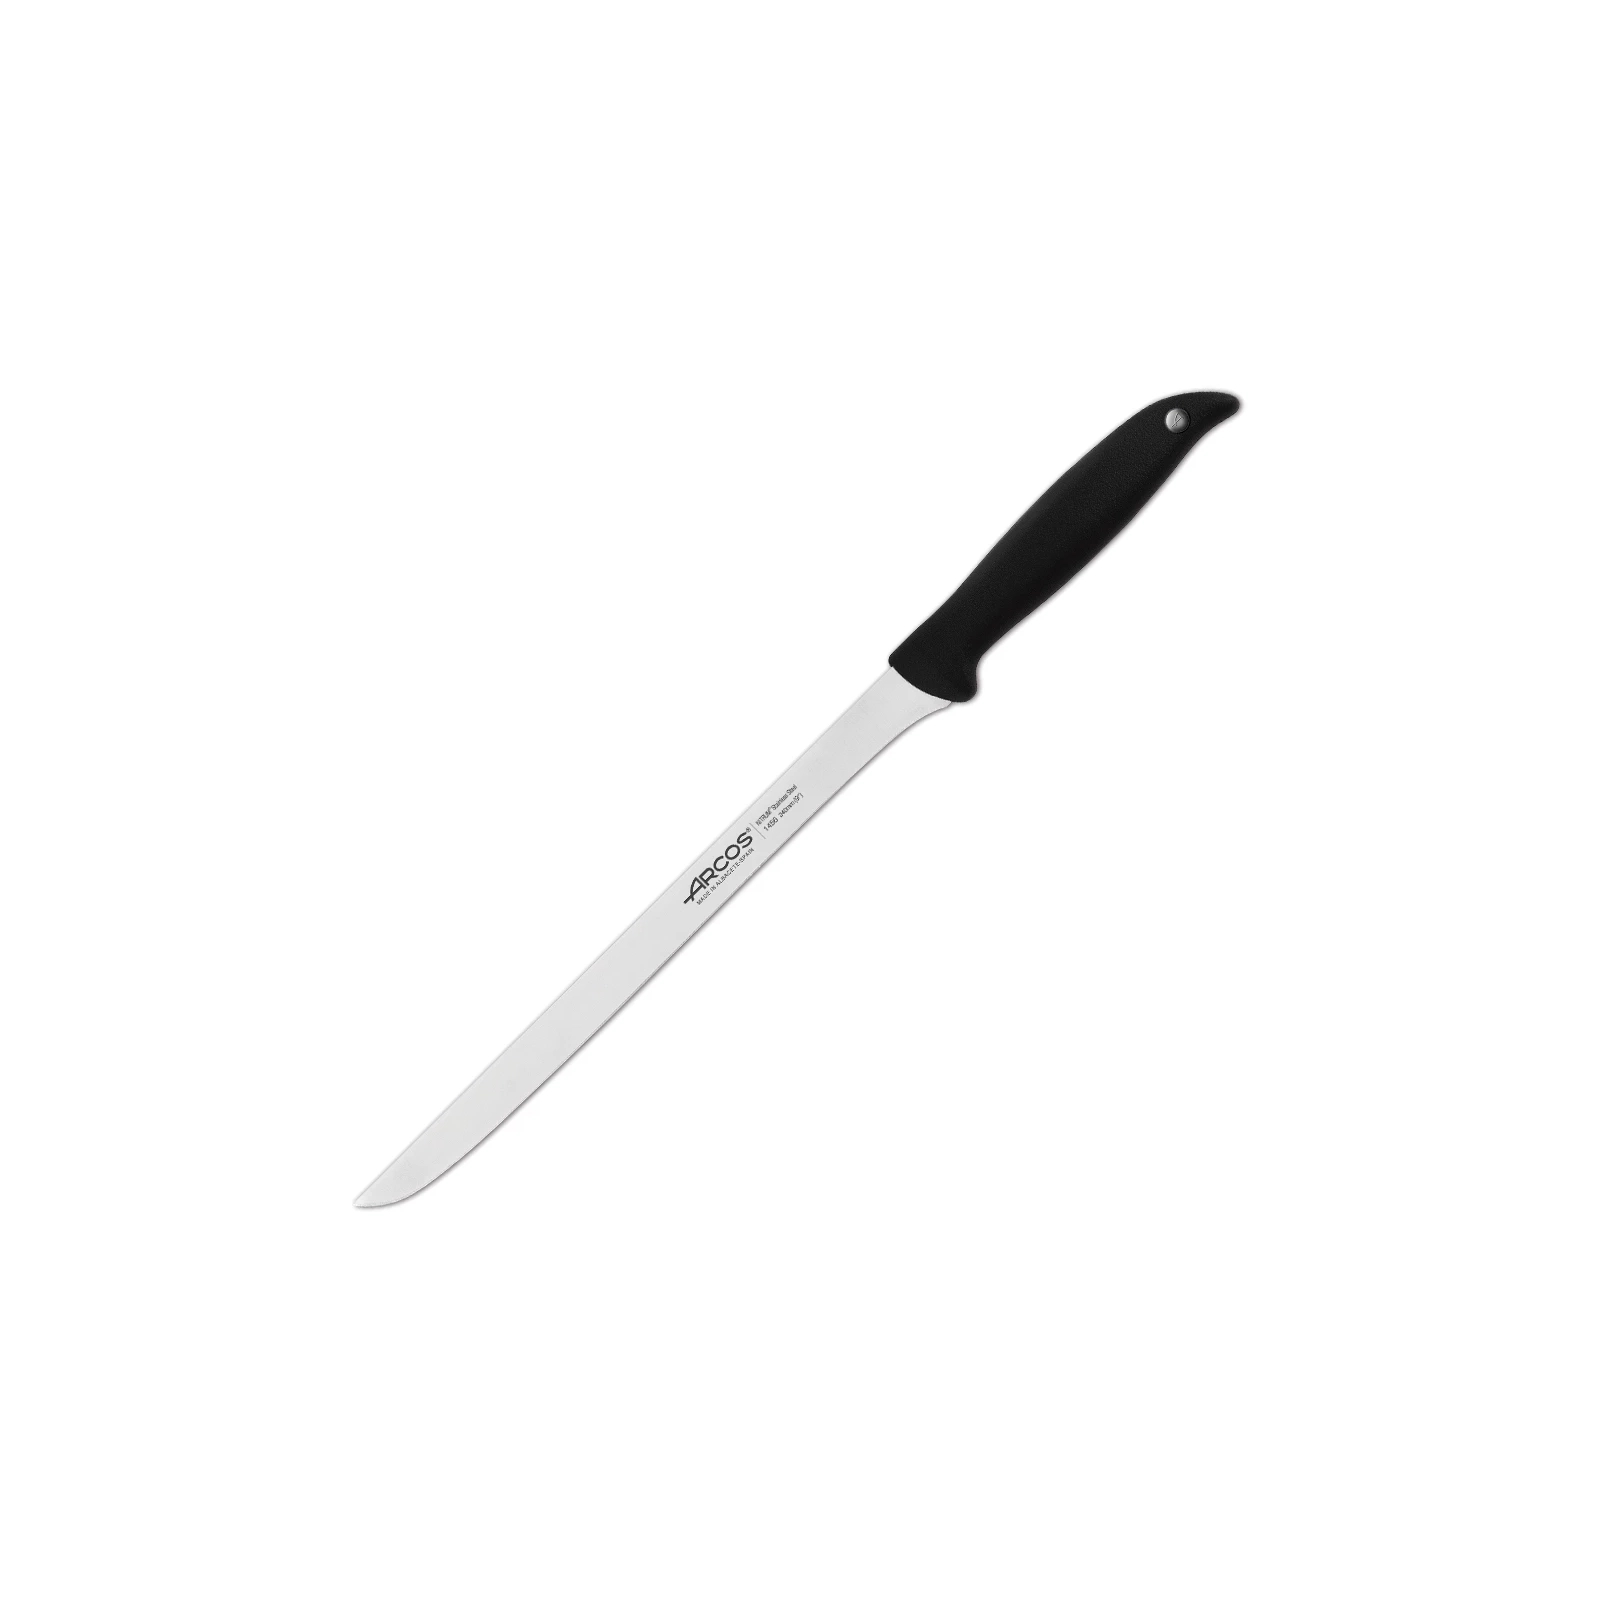 Кухонный нож Arcos Menorca для окосту 240 мм (145600)